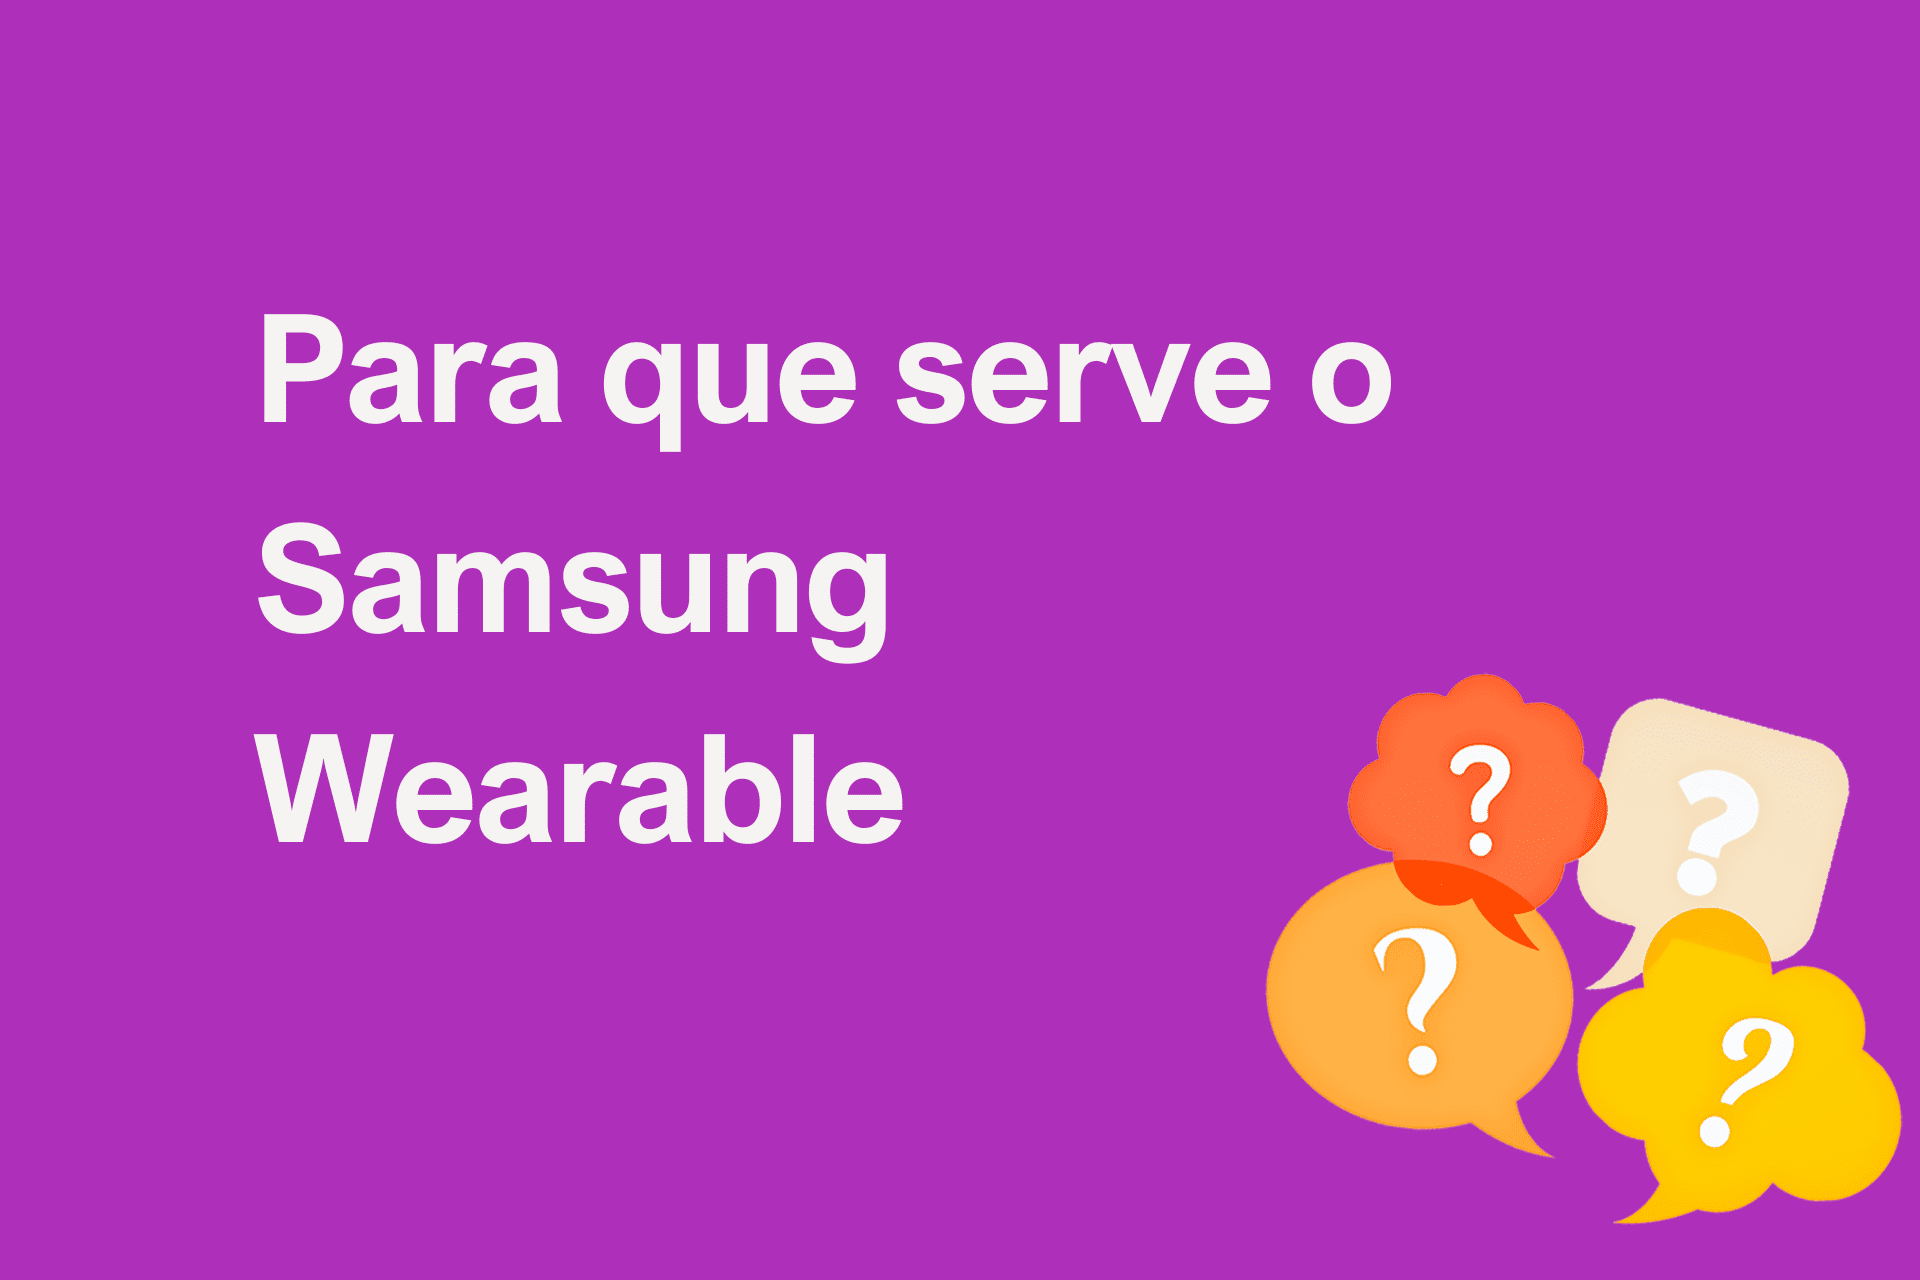 Para que serve o Samsung Wearable?